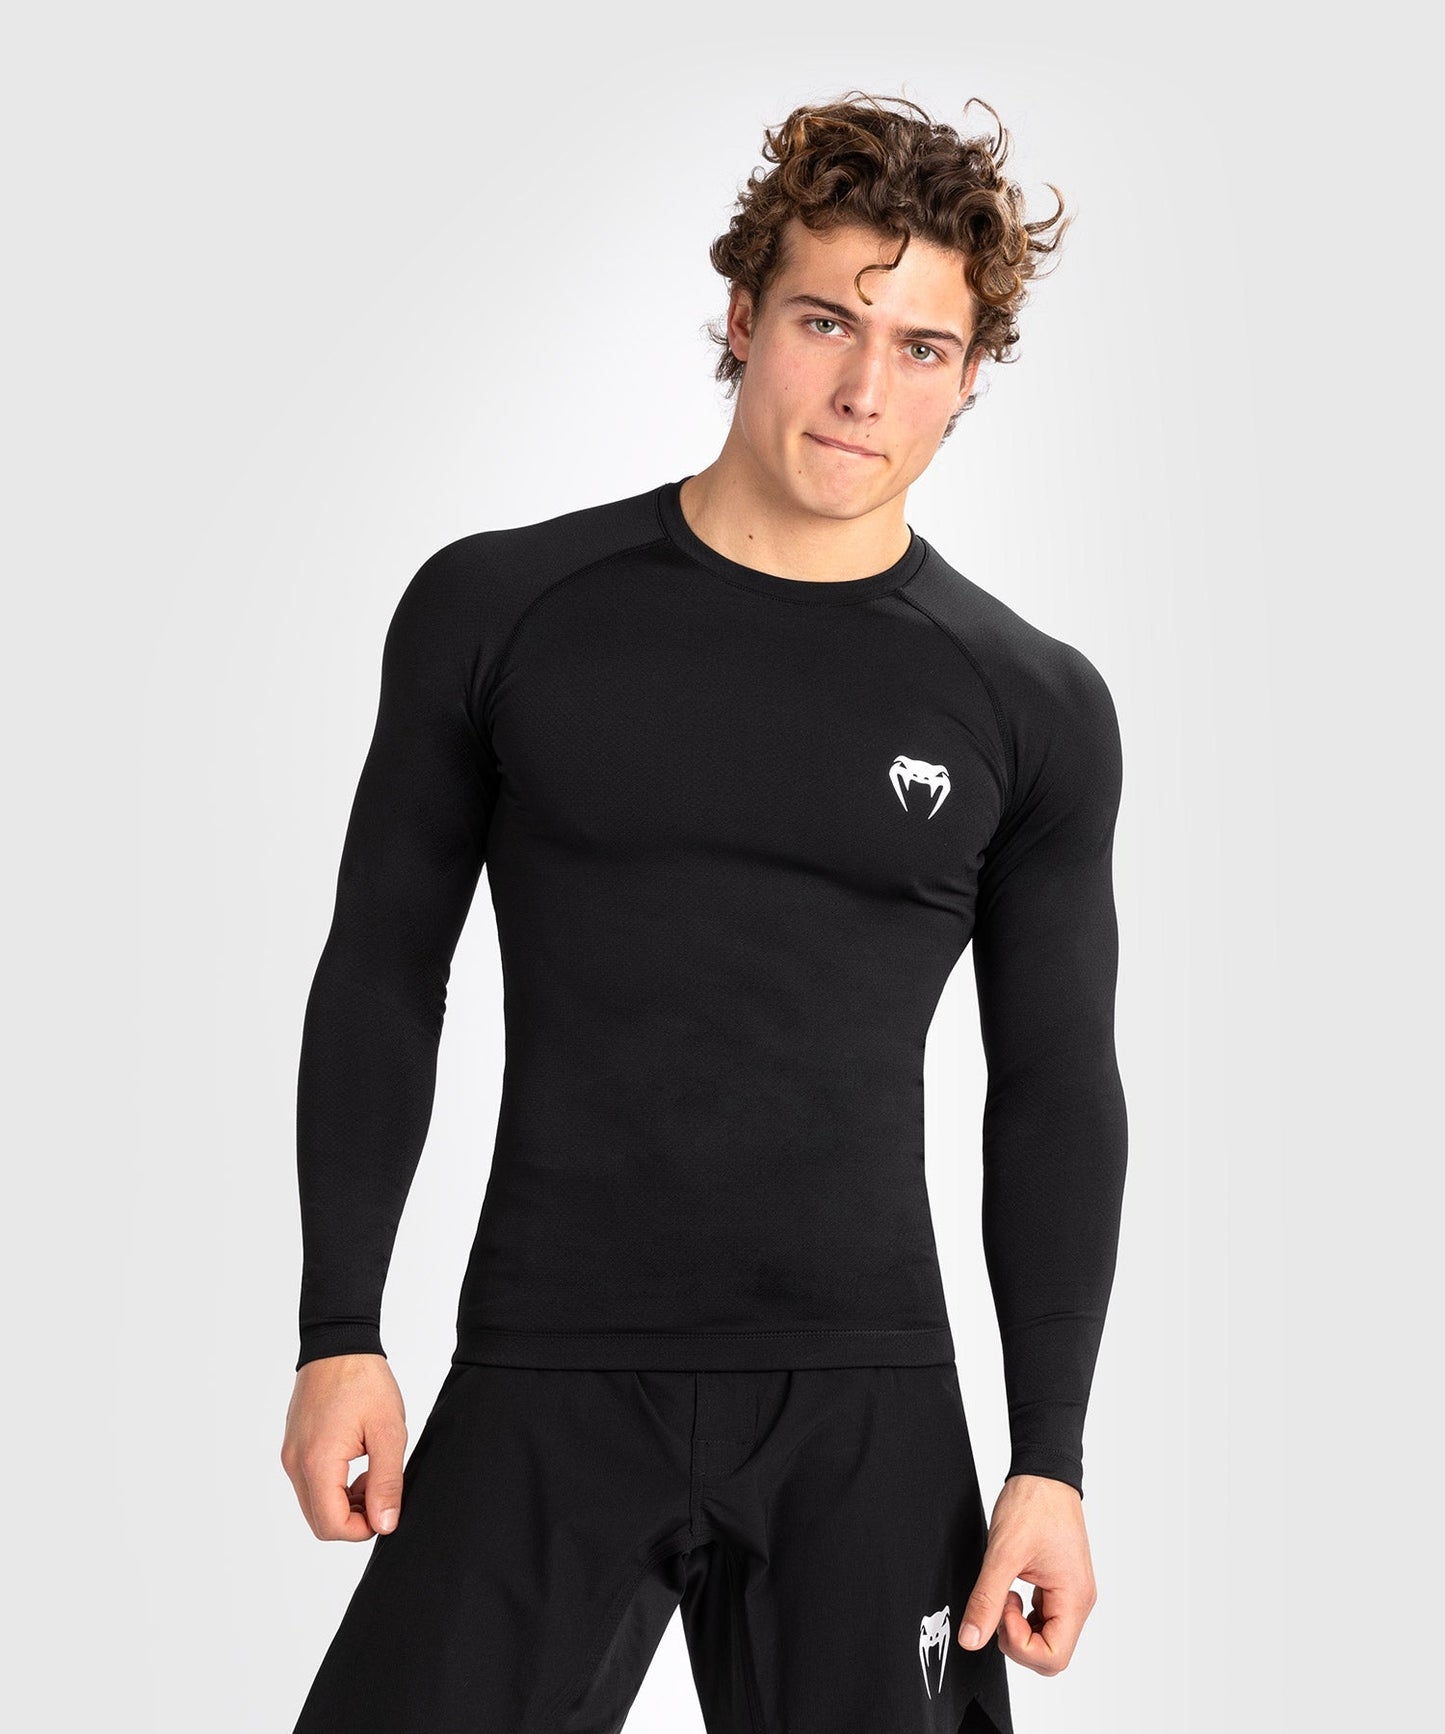 Rashguard à manches longues pour hommes Venum Contender - Noir/Blanc - T-shirts de compression